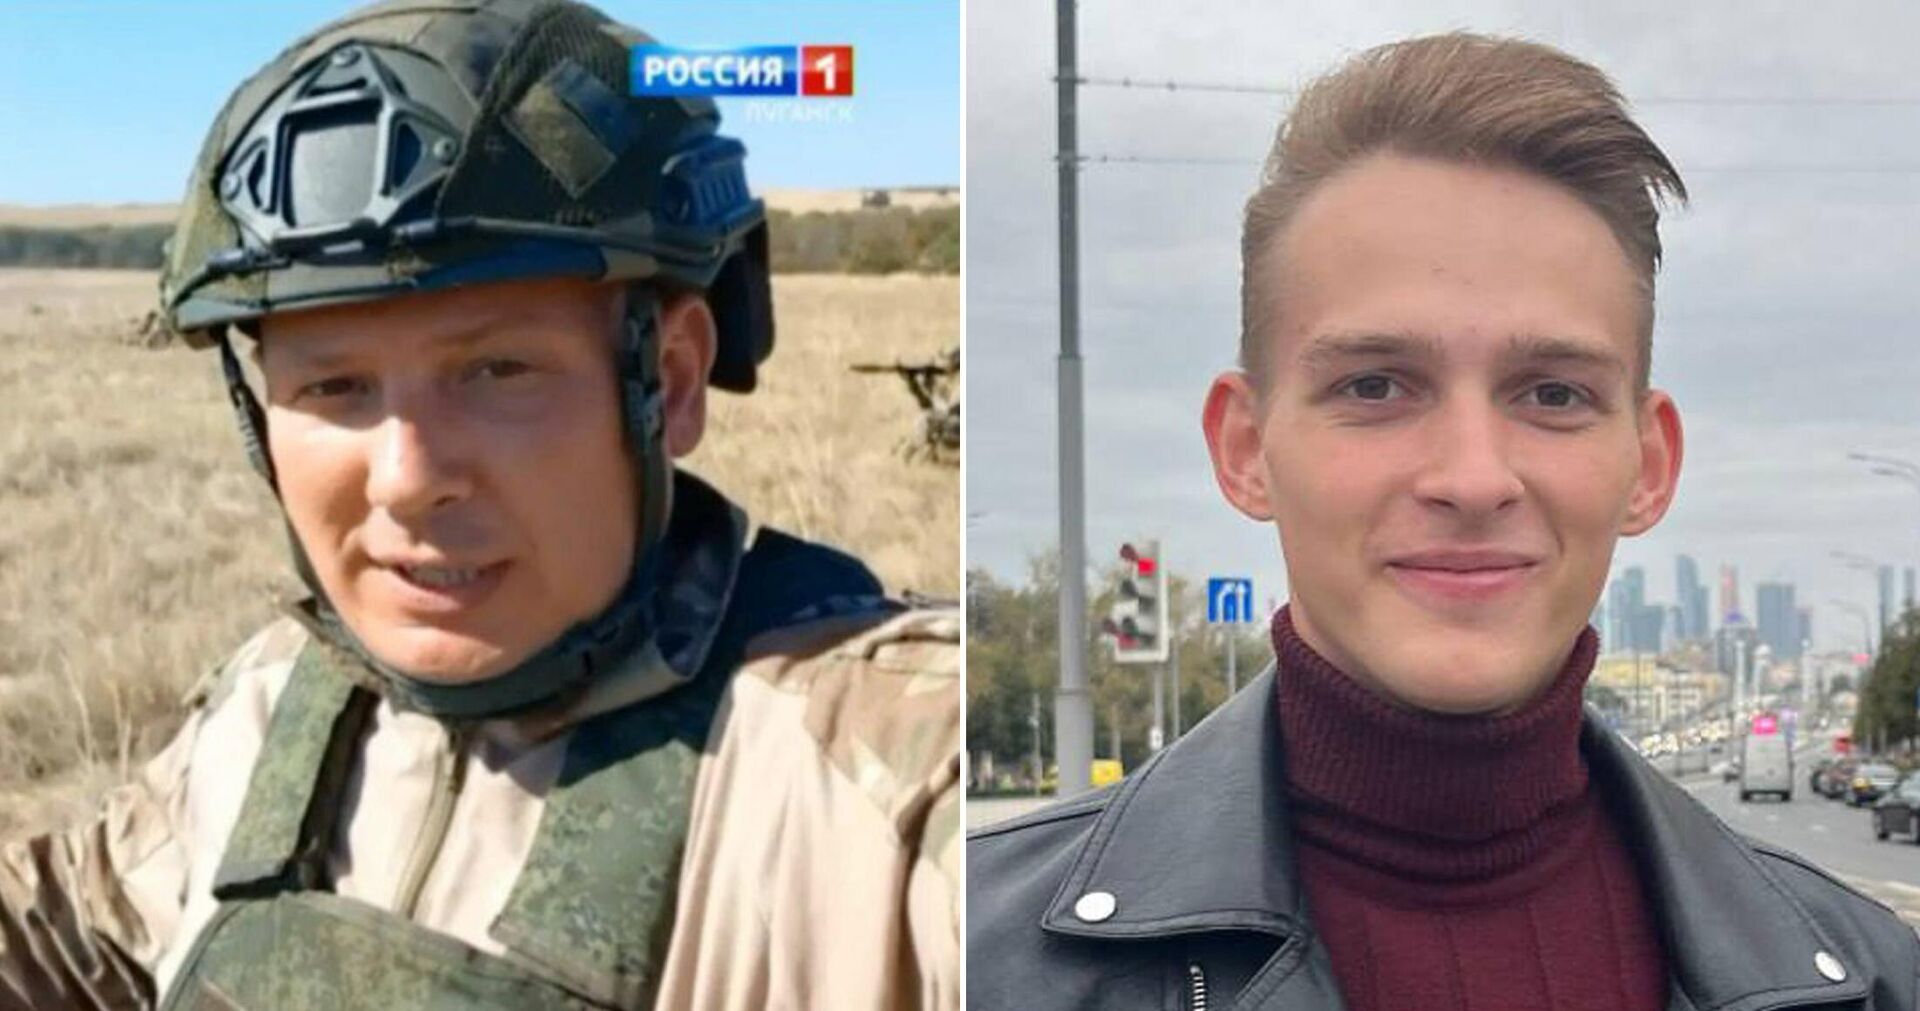 Получивший контузию журналист "Вести Луганск" выписался и продолжает работу